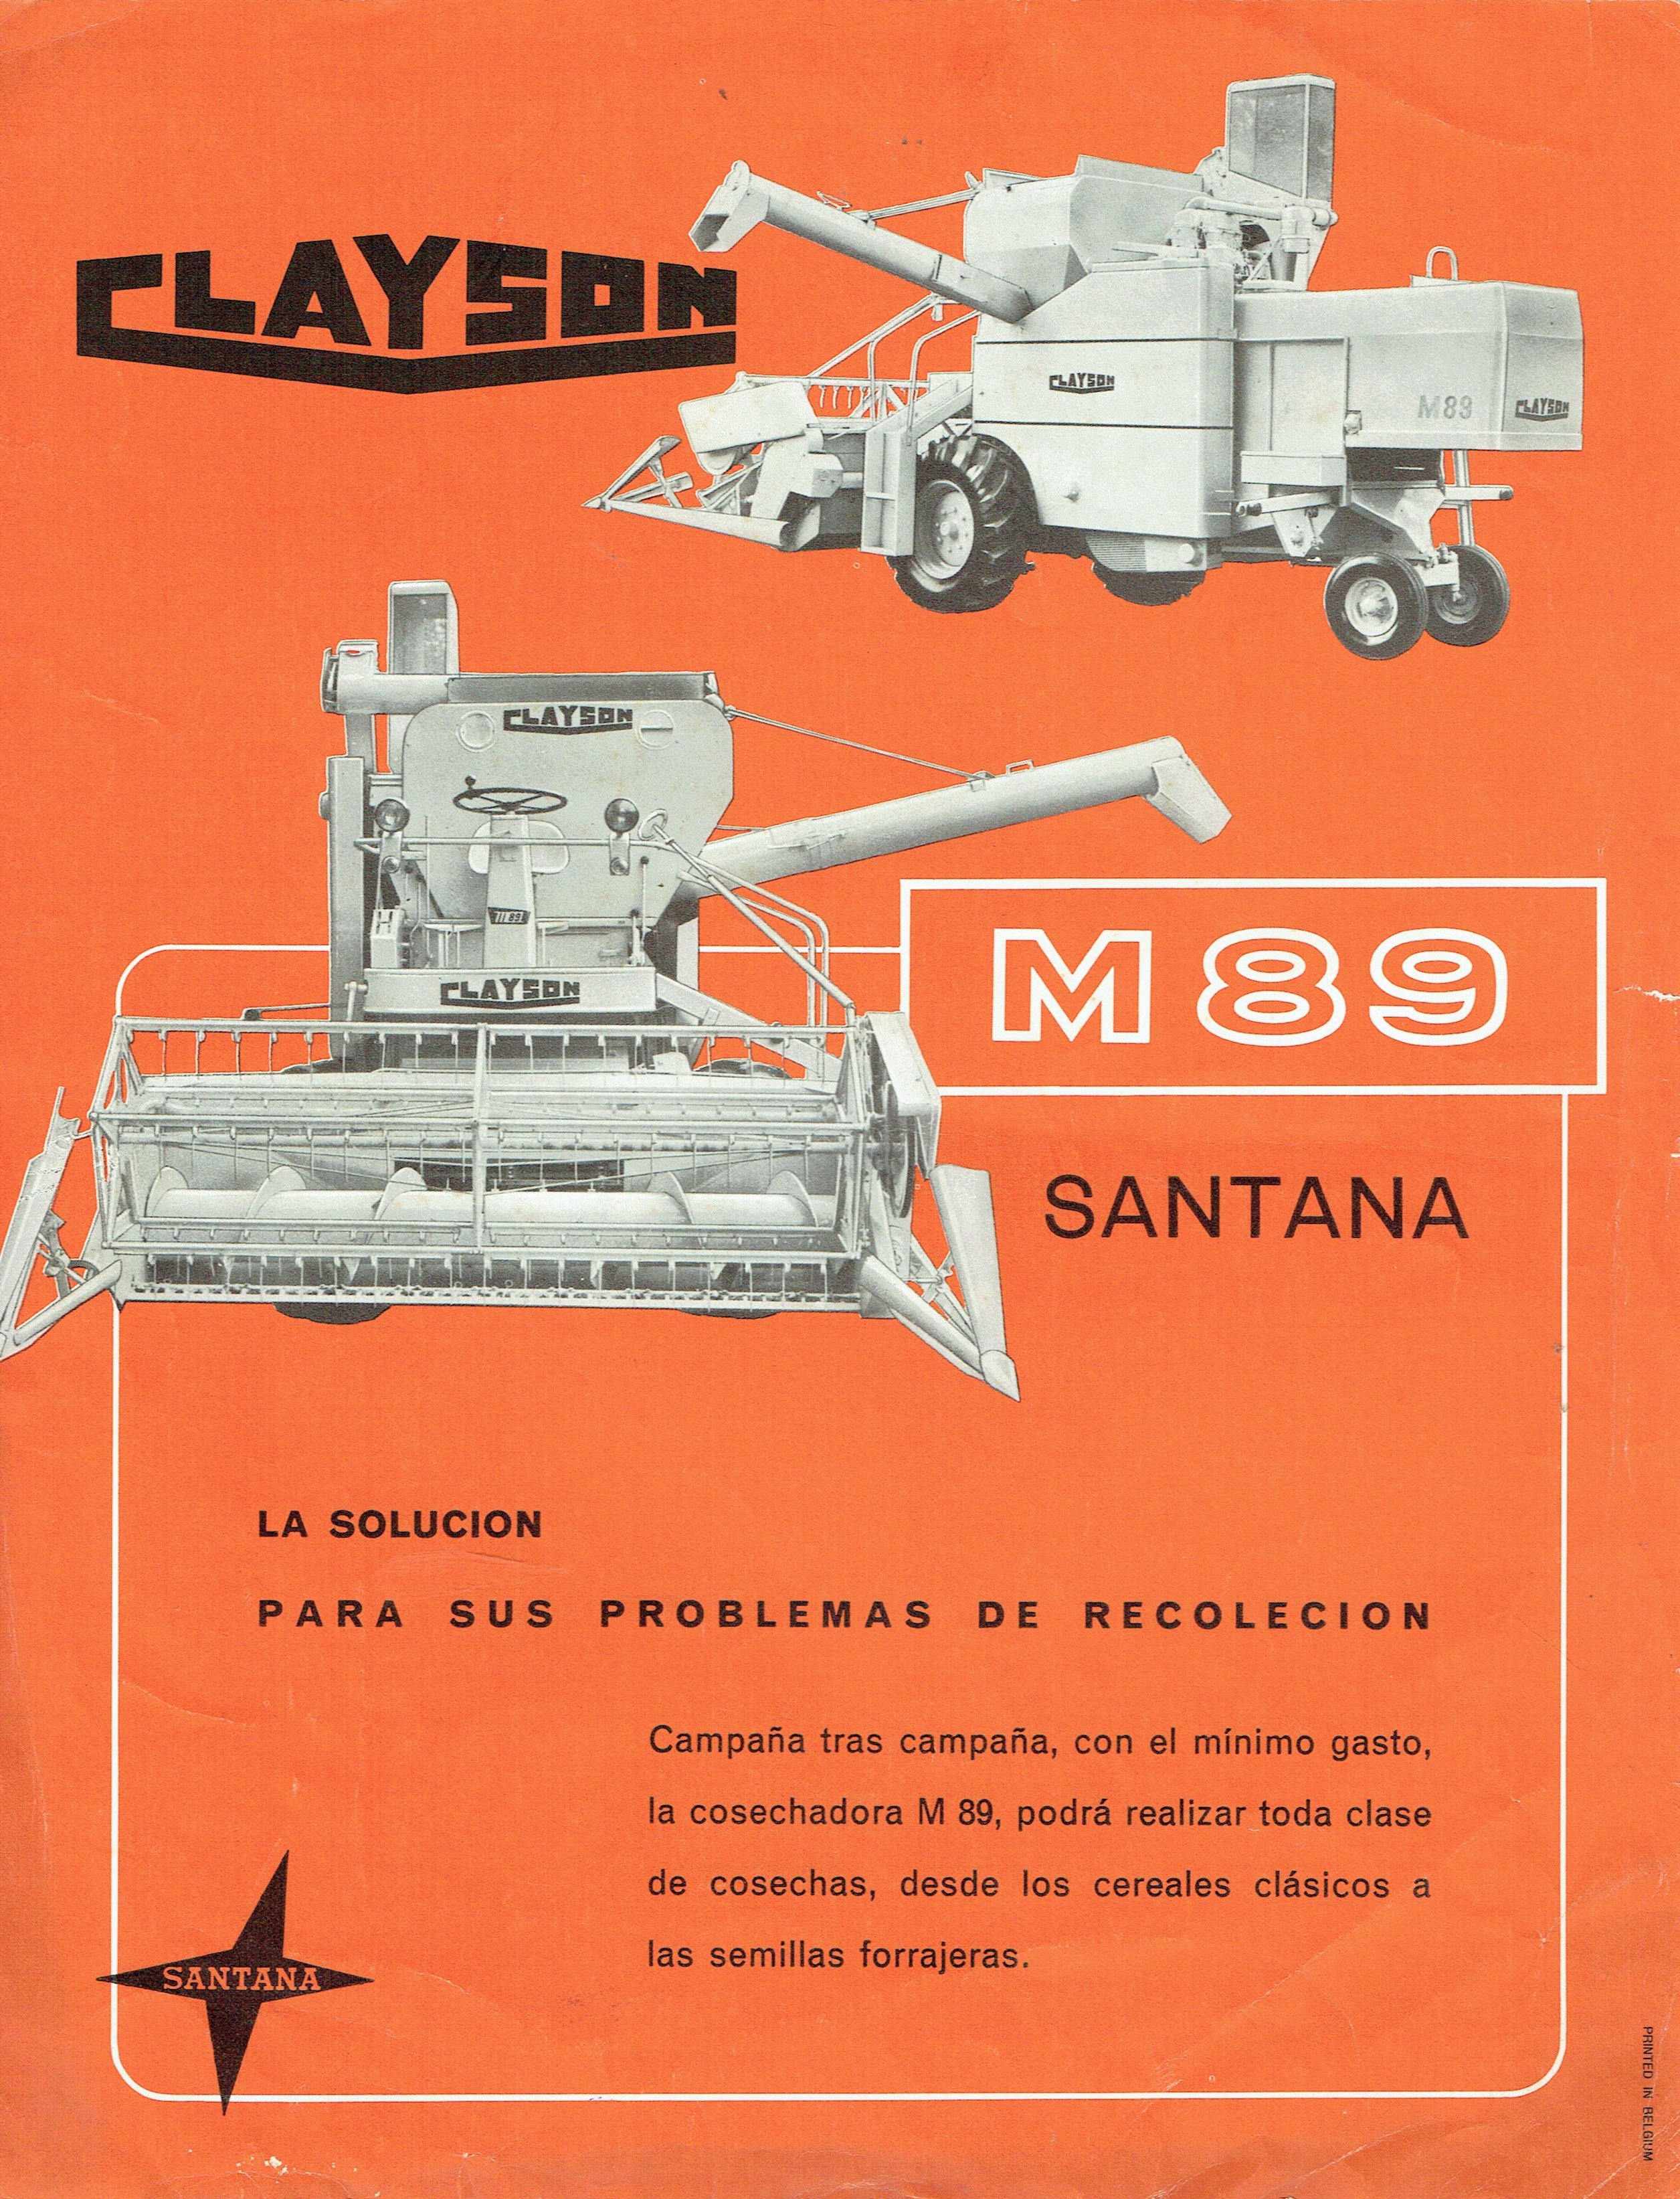 Santana/Clayson M89 (Metalurgica De Santa Ana.S.A. CC BY-NC)